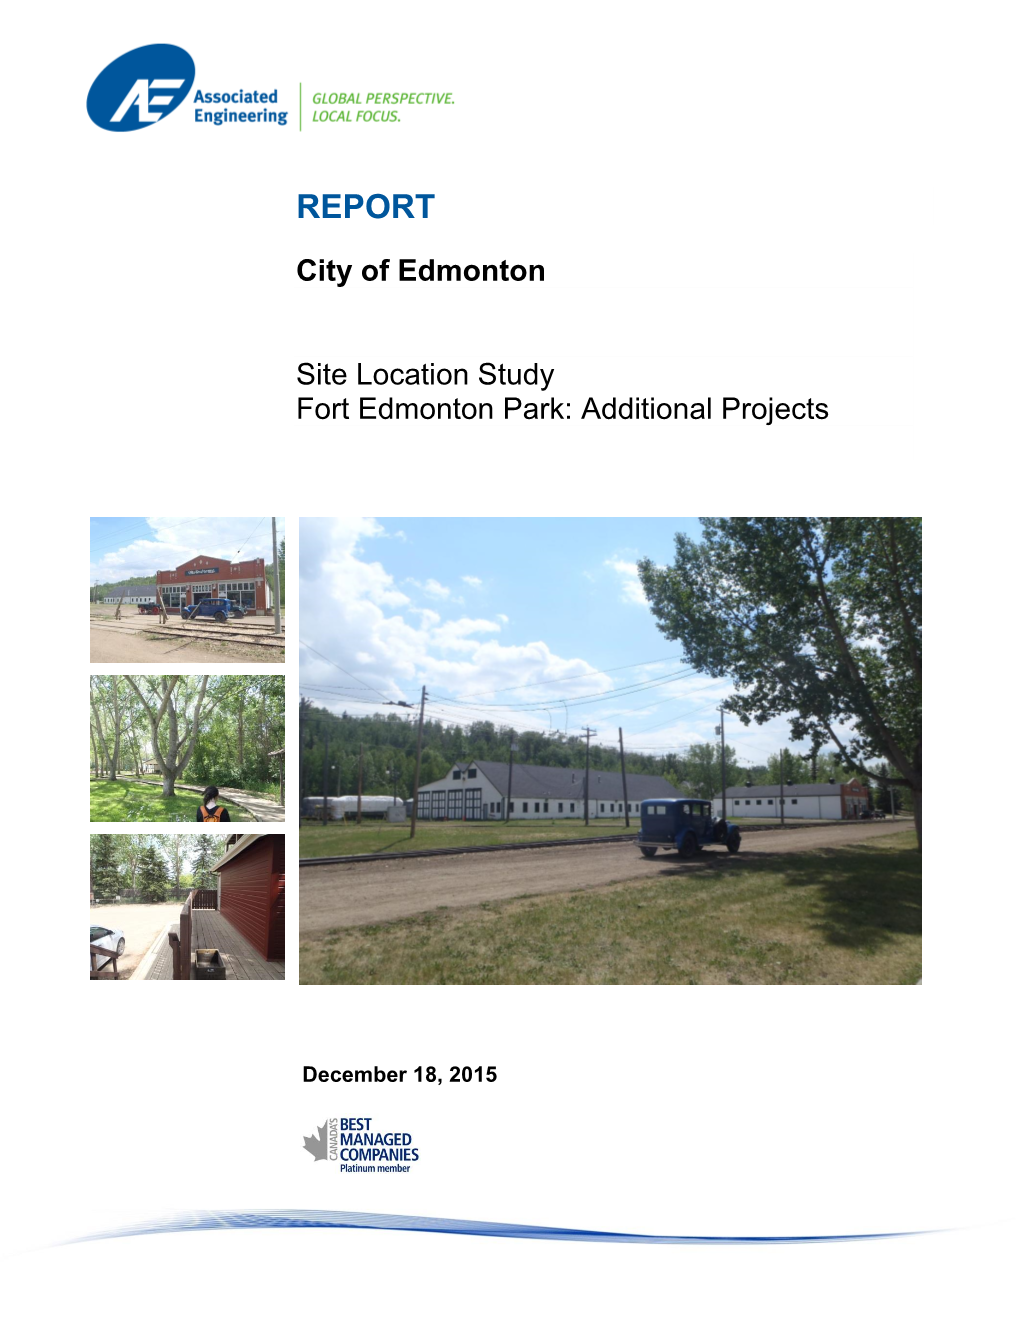 Fort Edmonton Park Enhancement Project